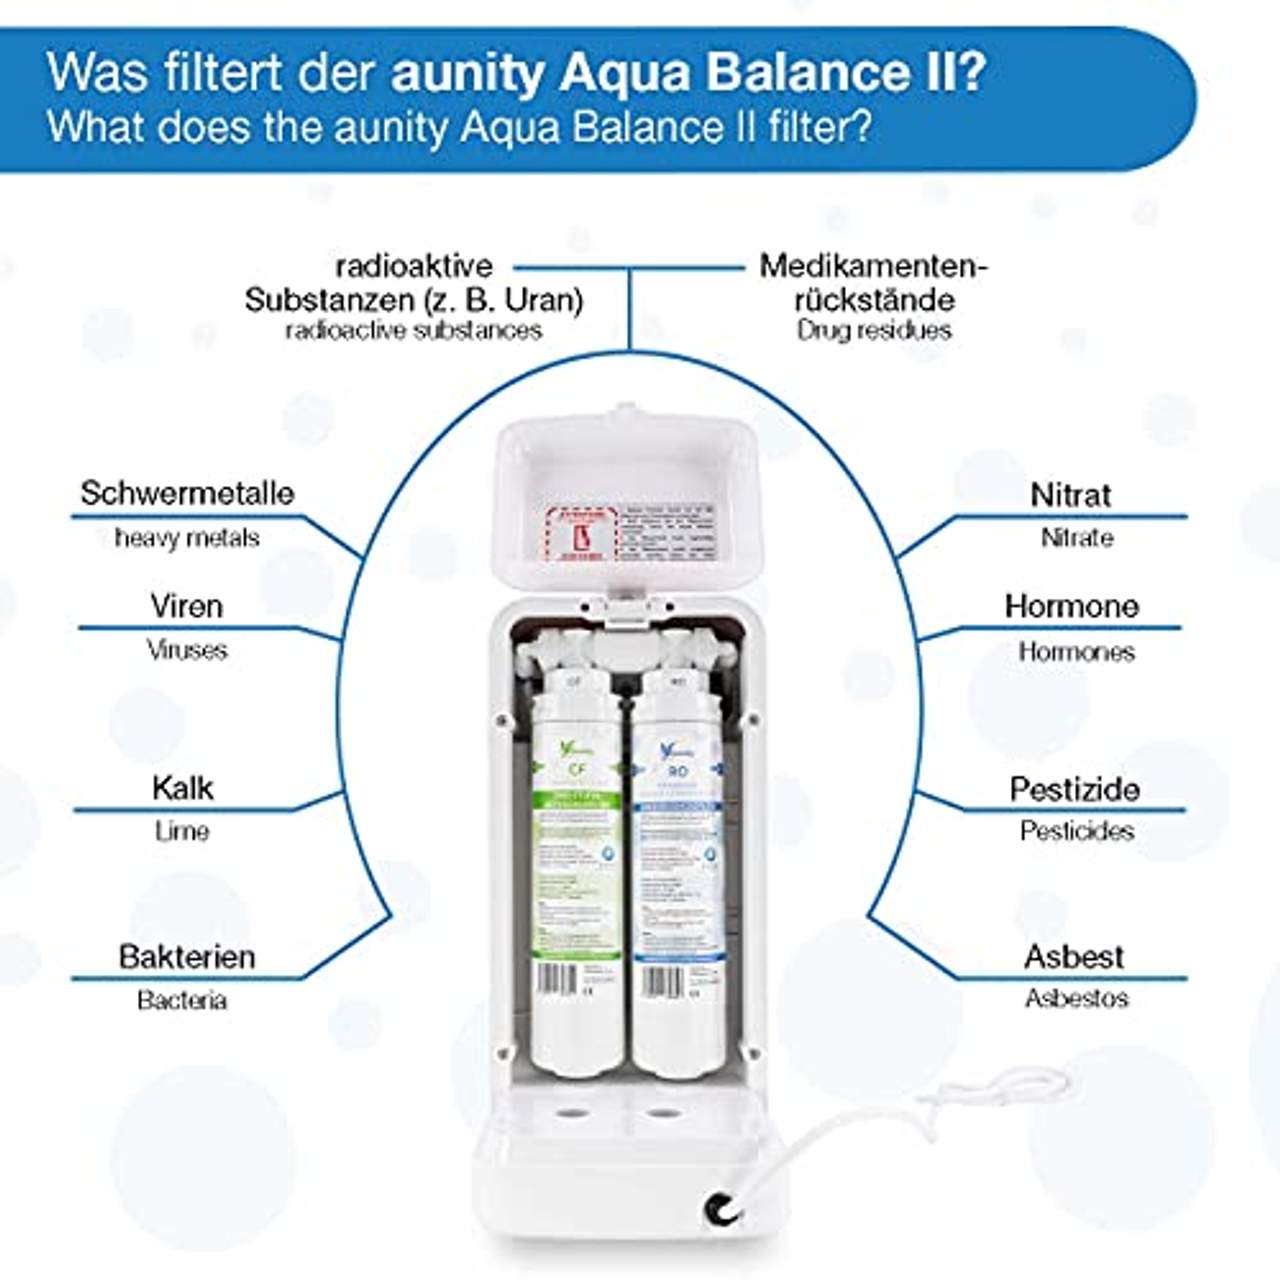 Aunity Aqua Balance II